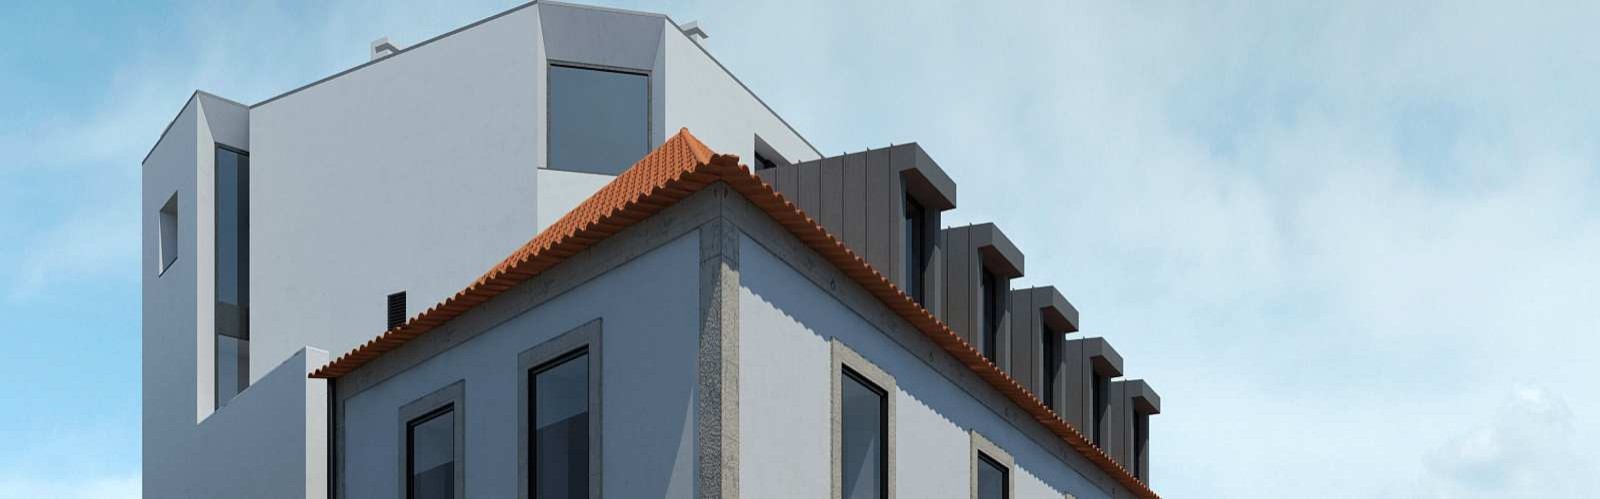 Vendo: Edificio con proyecto aprobado, para reformar, en el Centro de Vila Nova de Gaia, Oporto, Portugal_214614